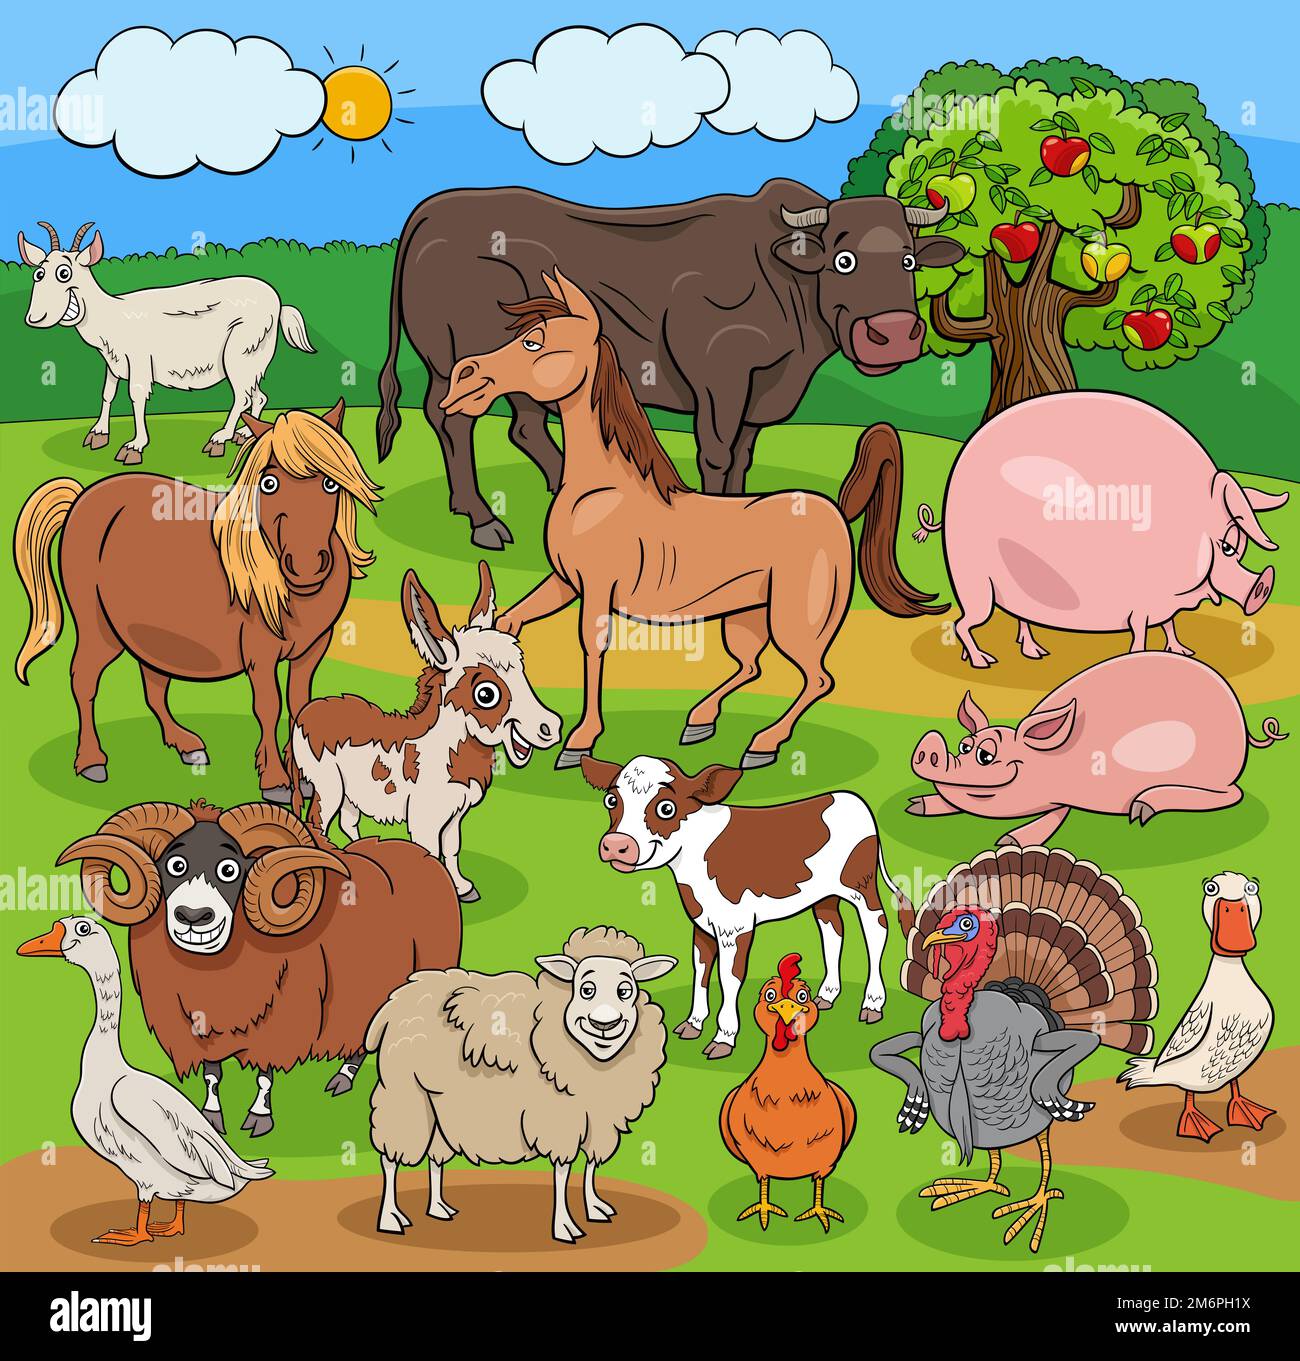 Funny cartoon farm animals characters group Stock Photo